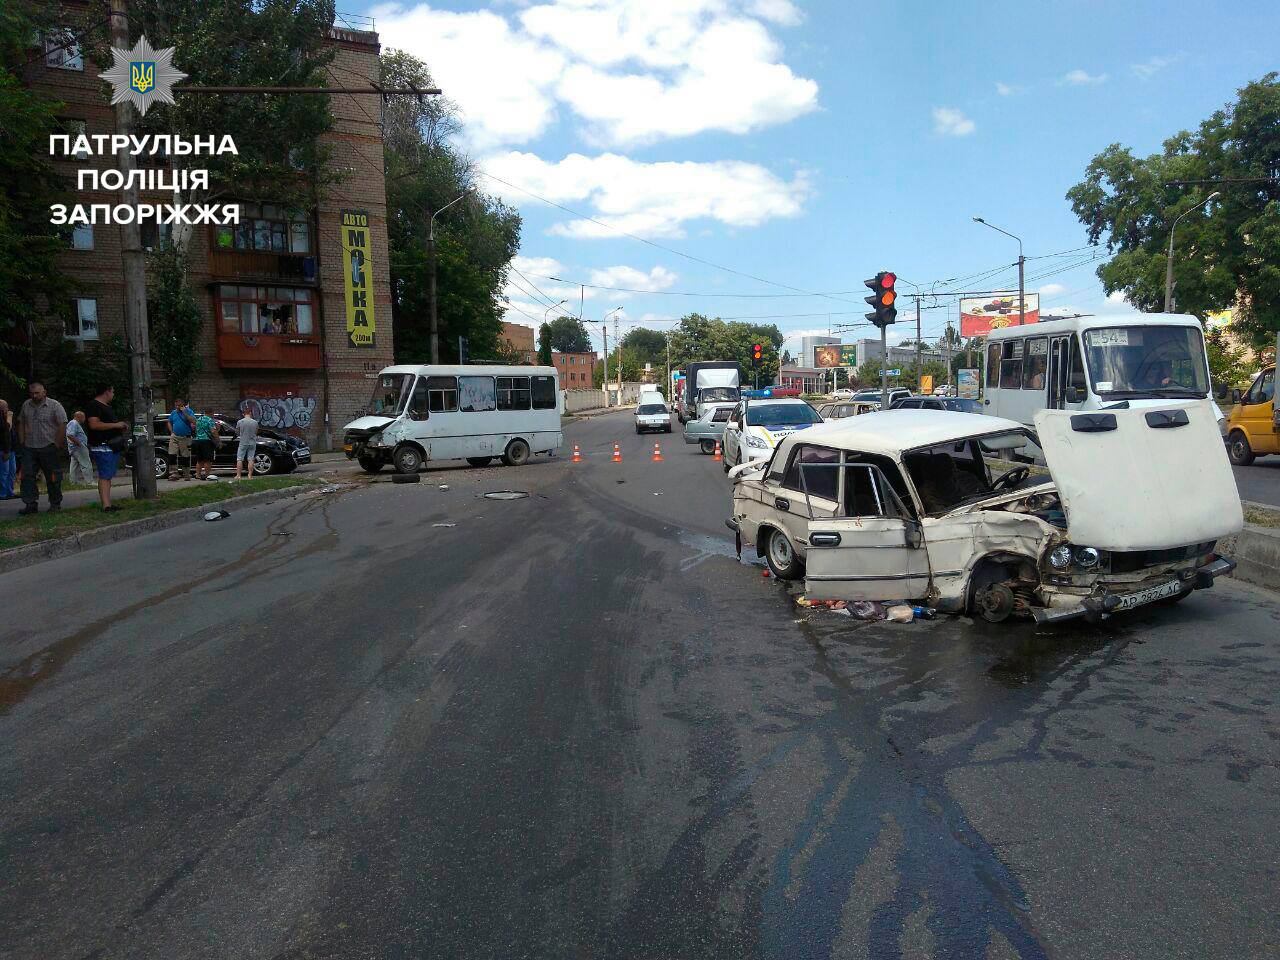 Новость - События - Авария на проспекте Металлургов: есть пострадавшие